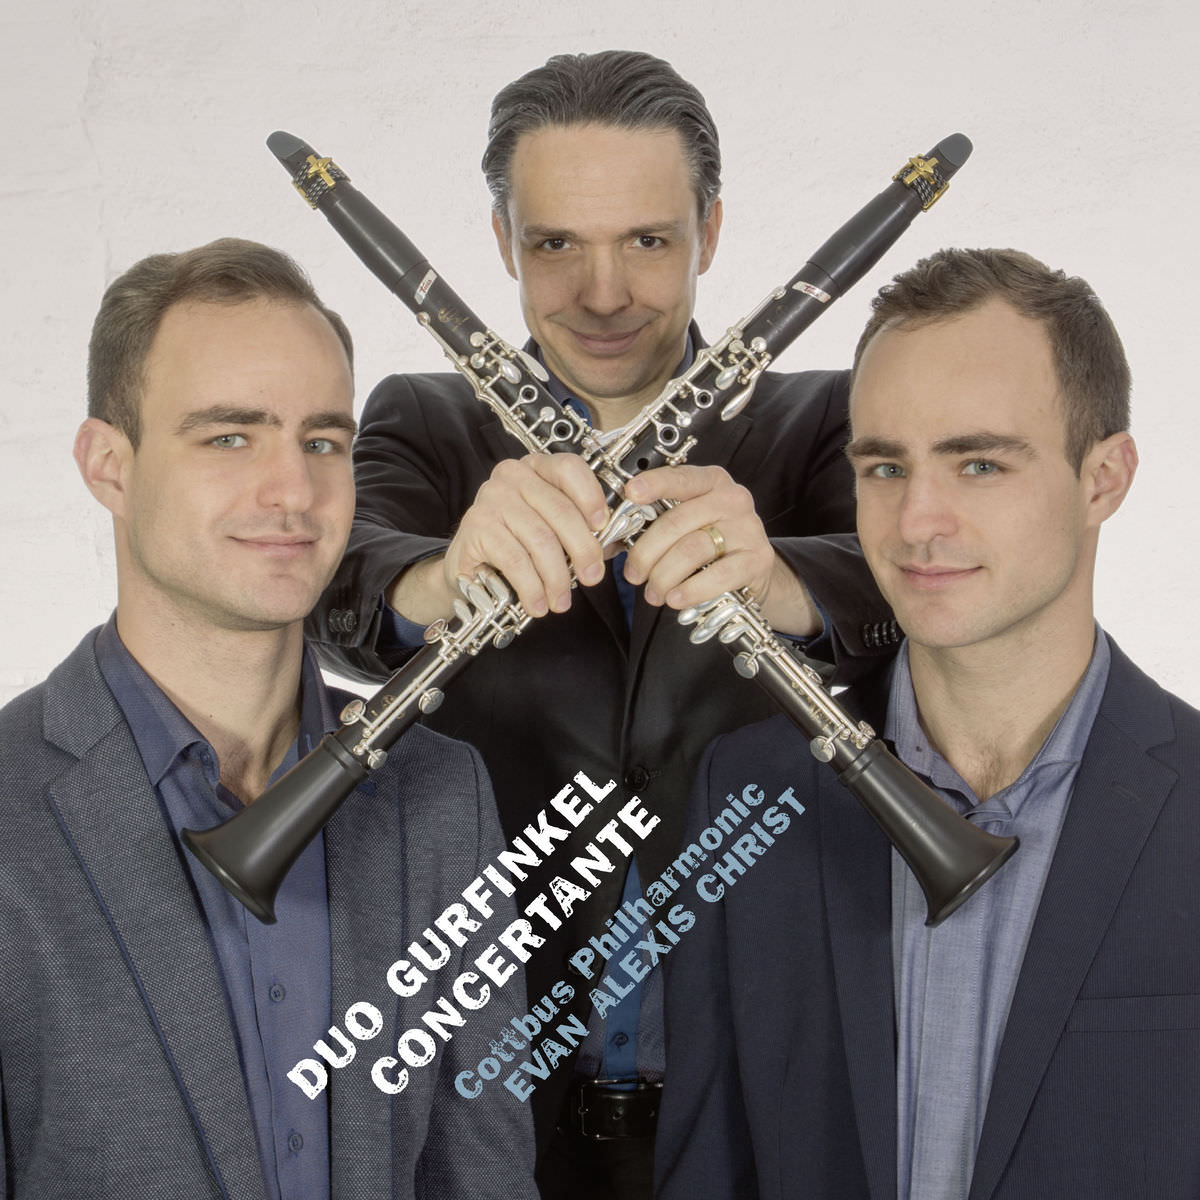 Duo Gurfinkel, Philharmonic State Orchestra Cottbus & Evan Alexis Christ - Duo Gurfinkel: Concertante (2018) [FLAC 24bit/96kHz]